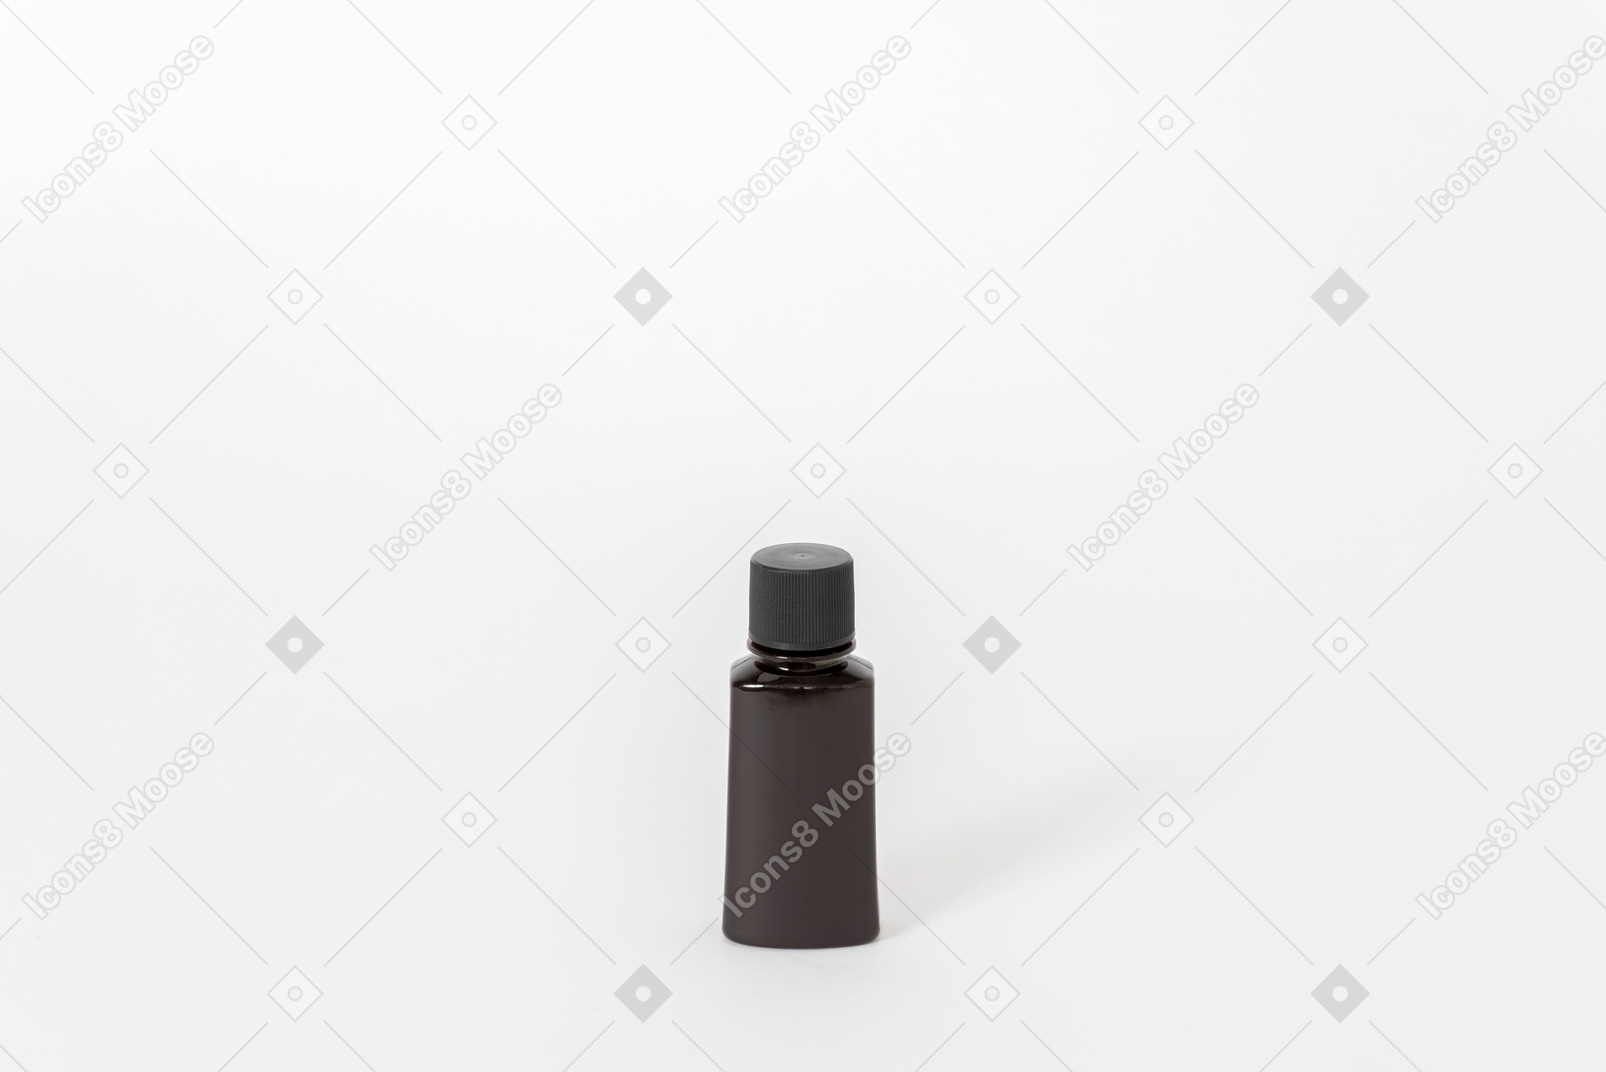 Schwarze parfümflasche auf weißem hintergrund